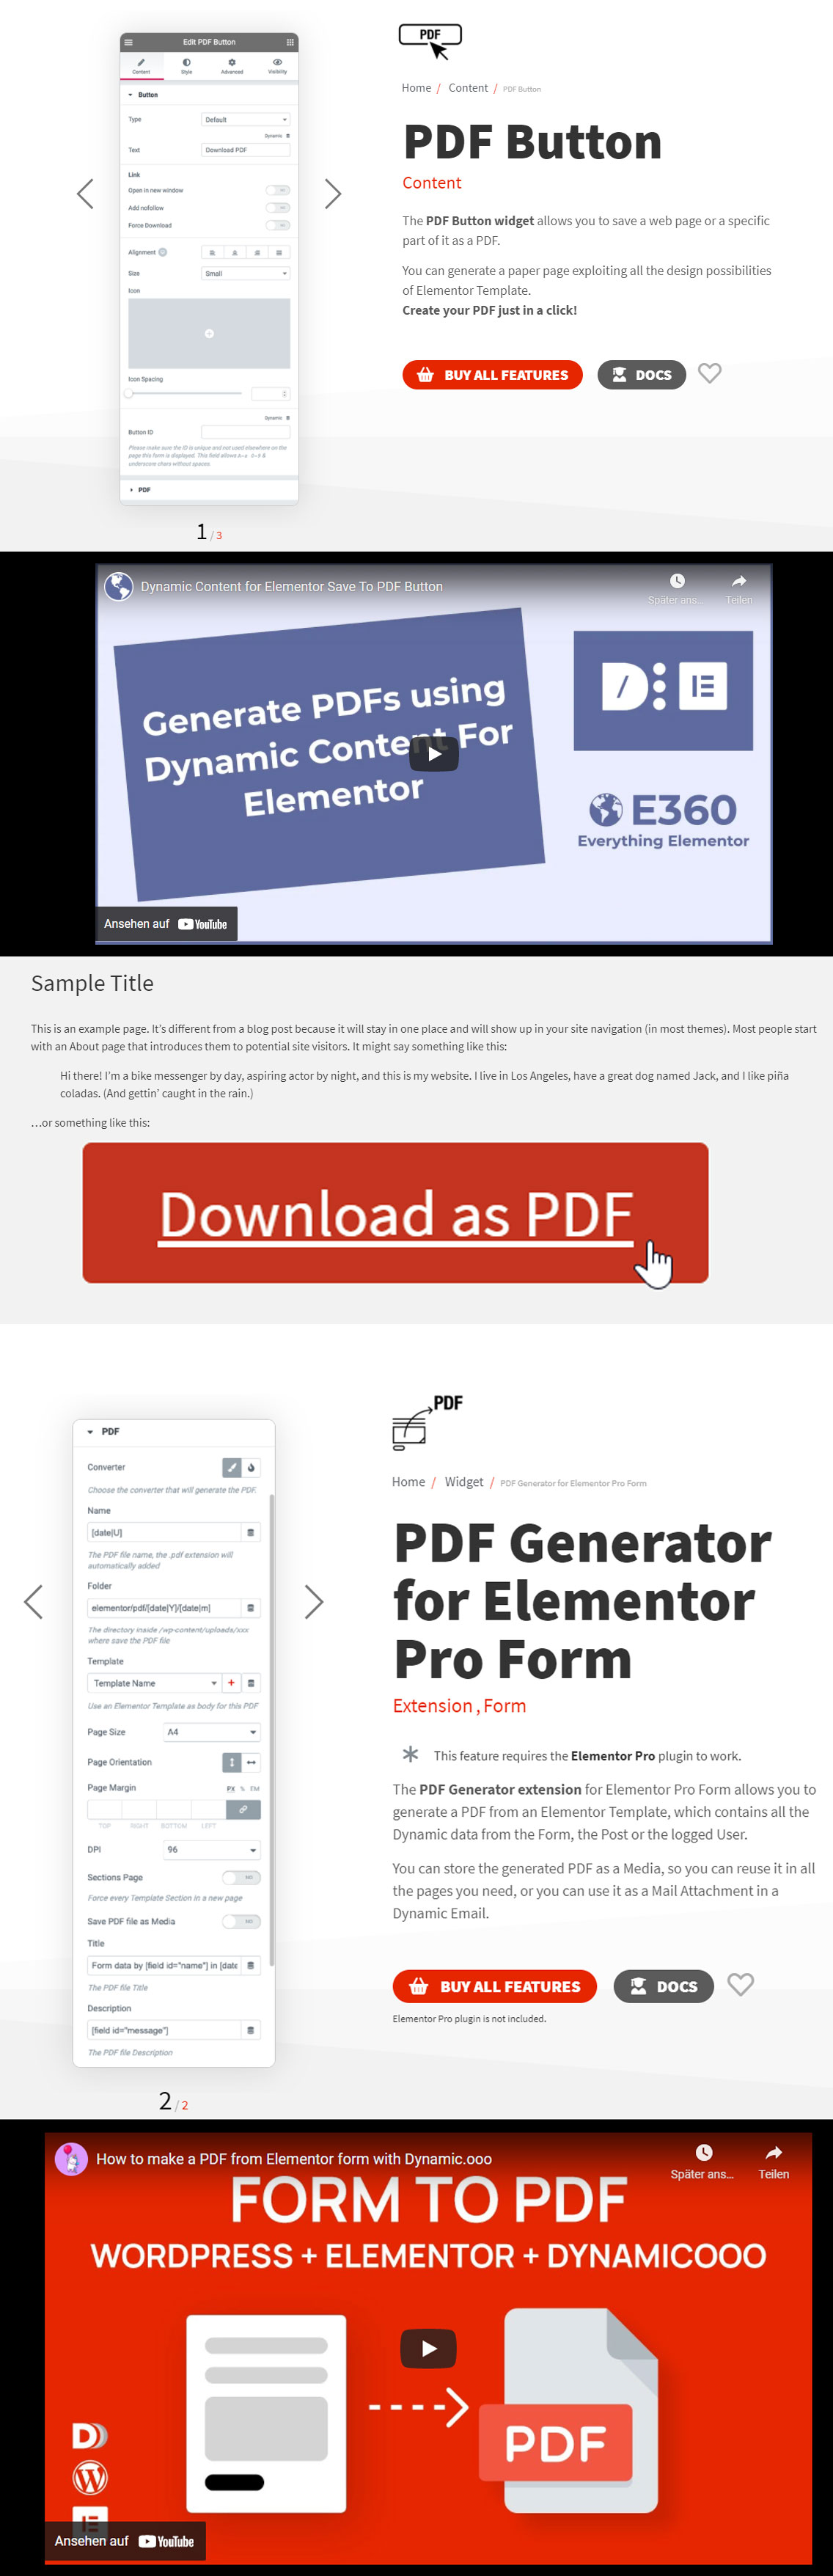 Générer des PDF Widget par Dynamic.ooo pour Elementor